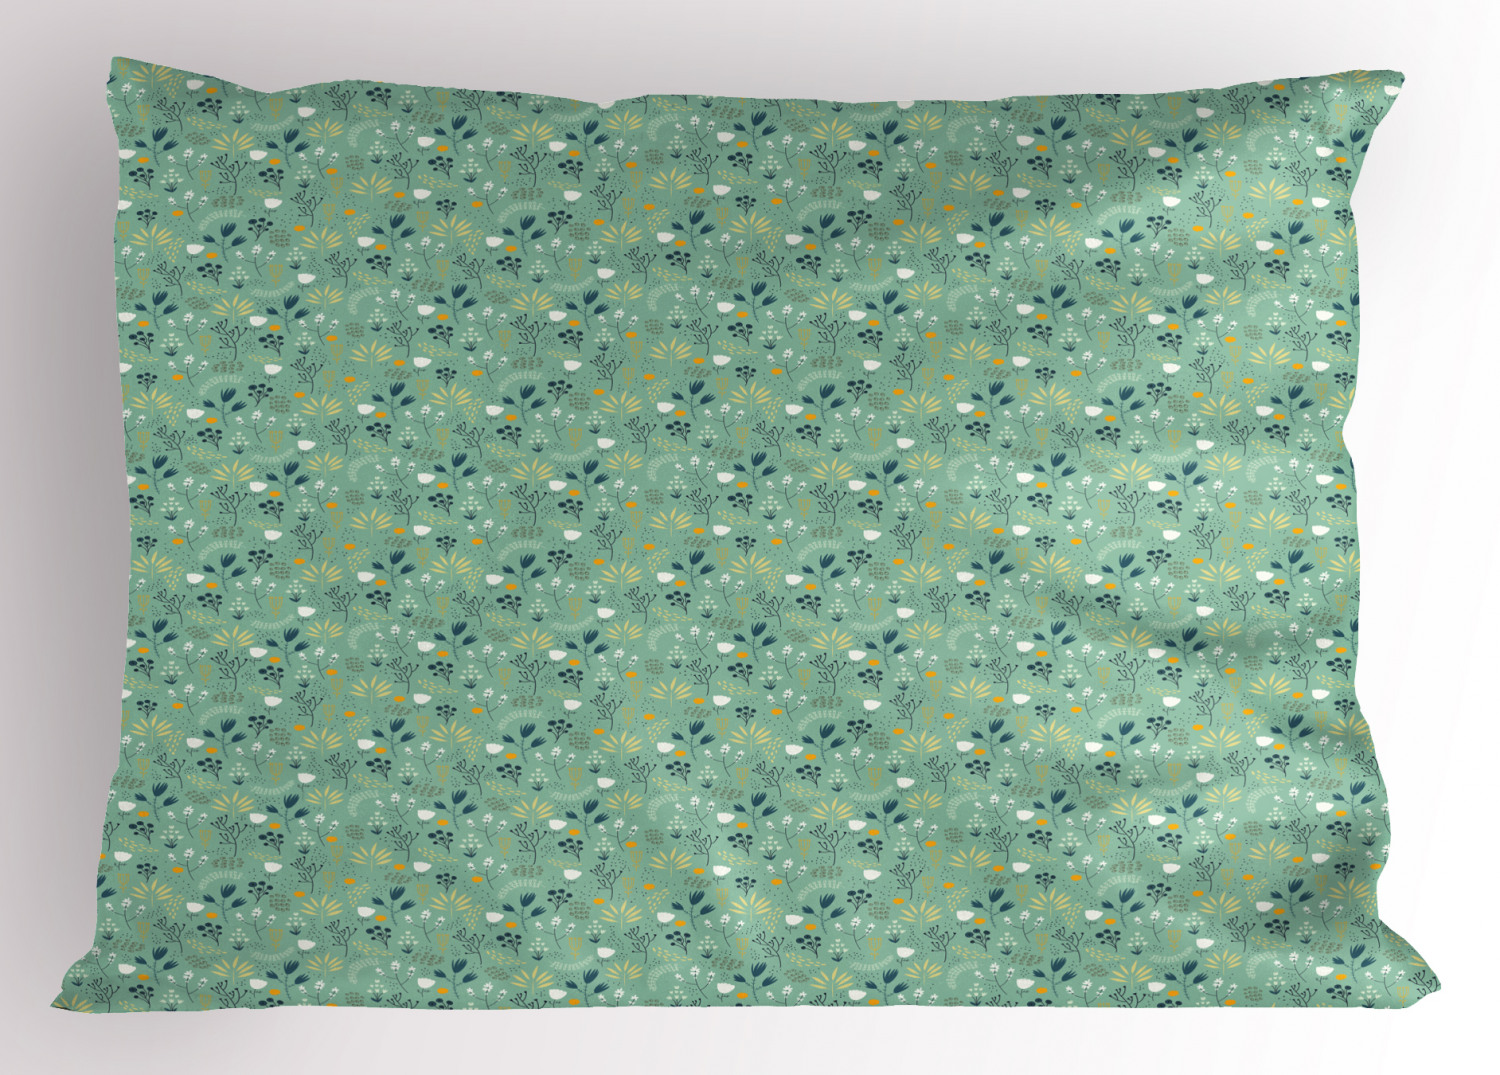 Details about   Feminine Garden Pillow Sham Decorative Pillowcase 3 Sizes Bedroom Decoration 